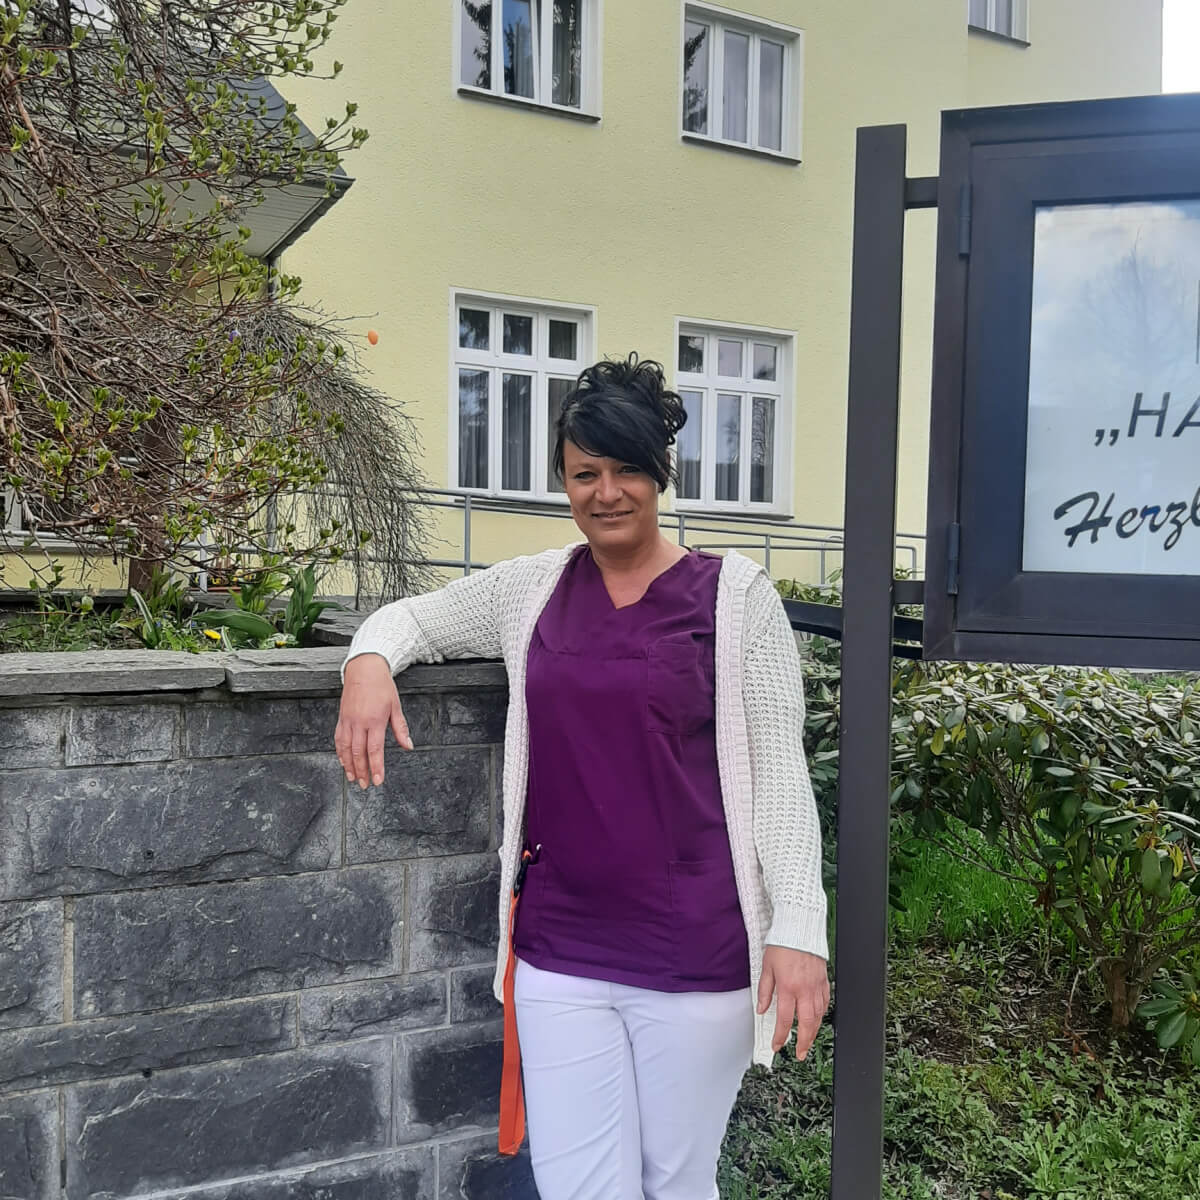 Wohnbereichsleiterin Sandra Lein vor der Alloheim Senioren-Residenz "Haus am See" in Bad Elster